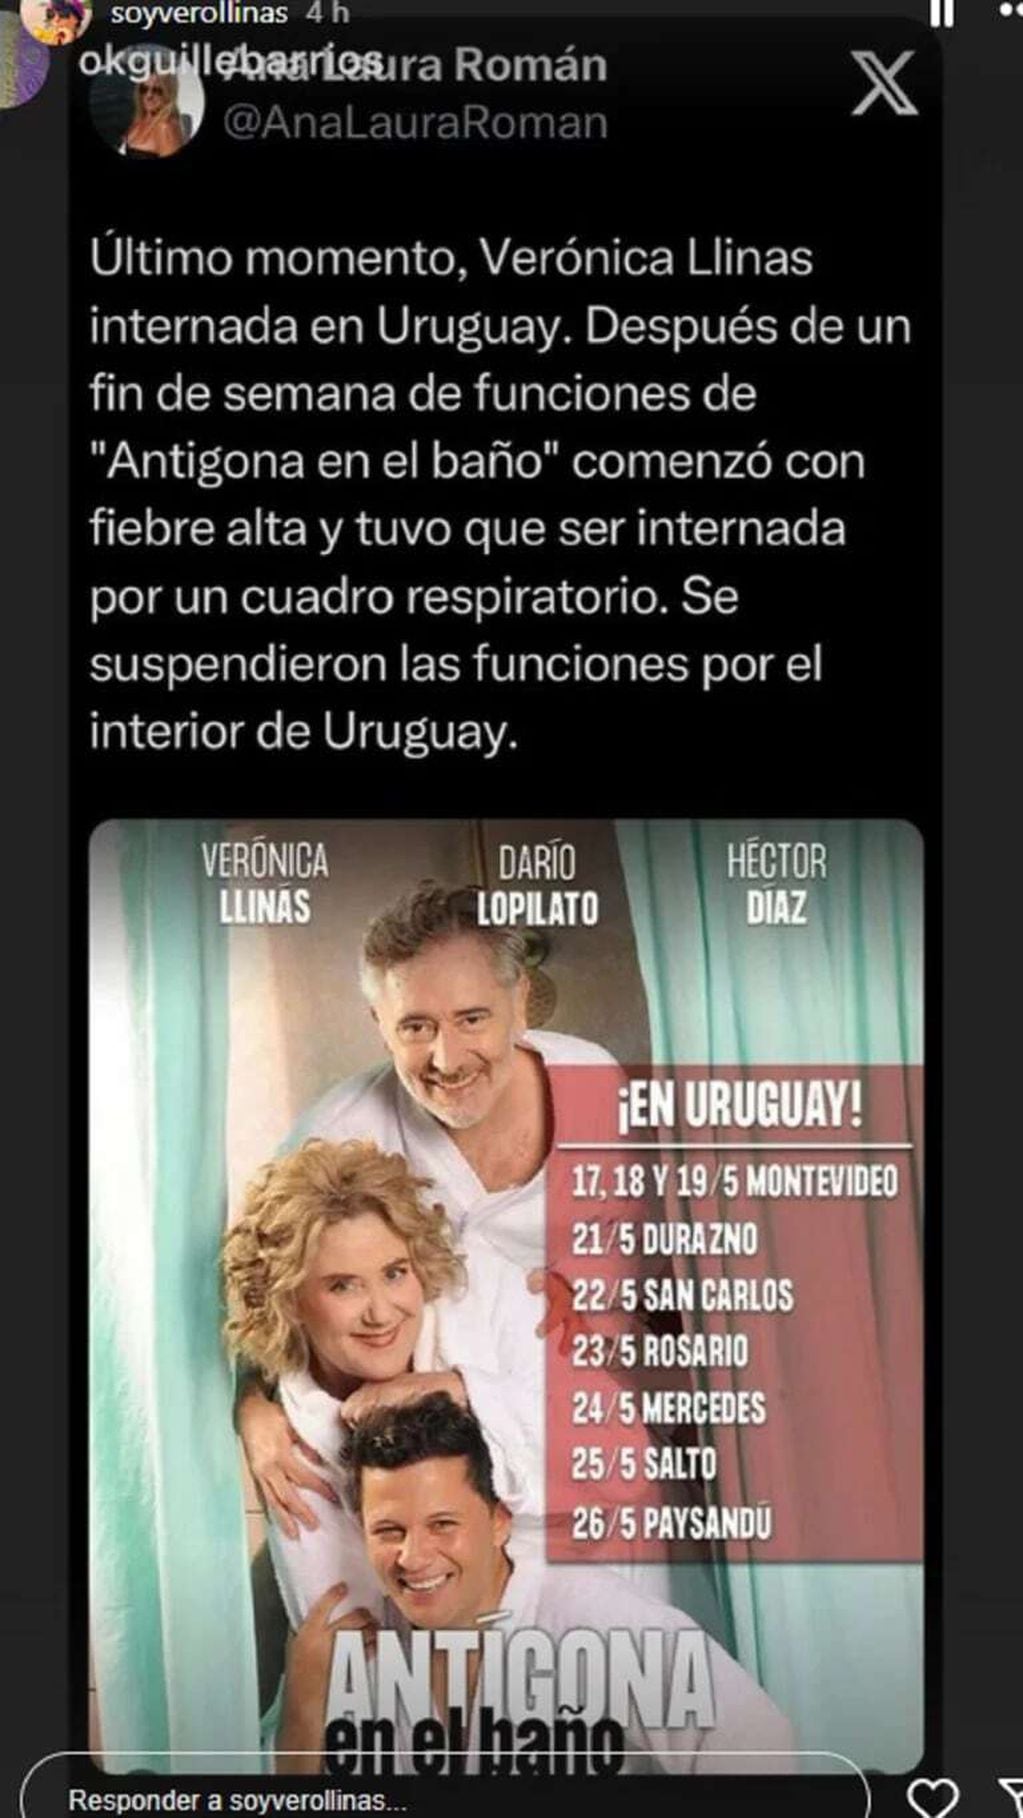 Verónica Llinás fue internada en Uruguay. / WEB